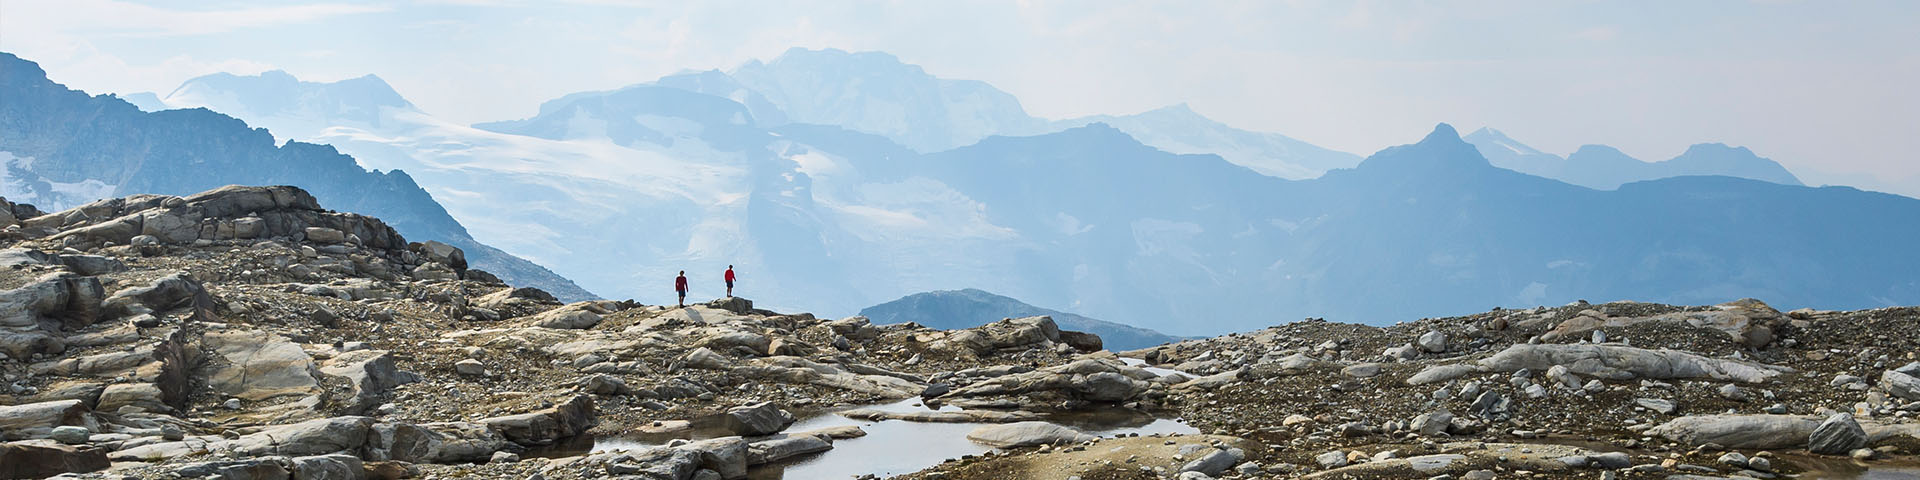 deux randonneurs haut dans l'alpin